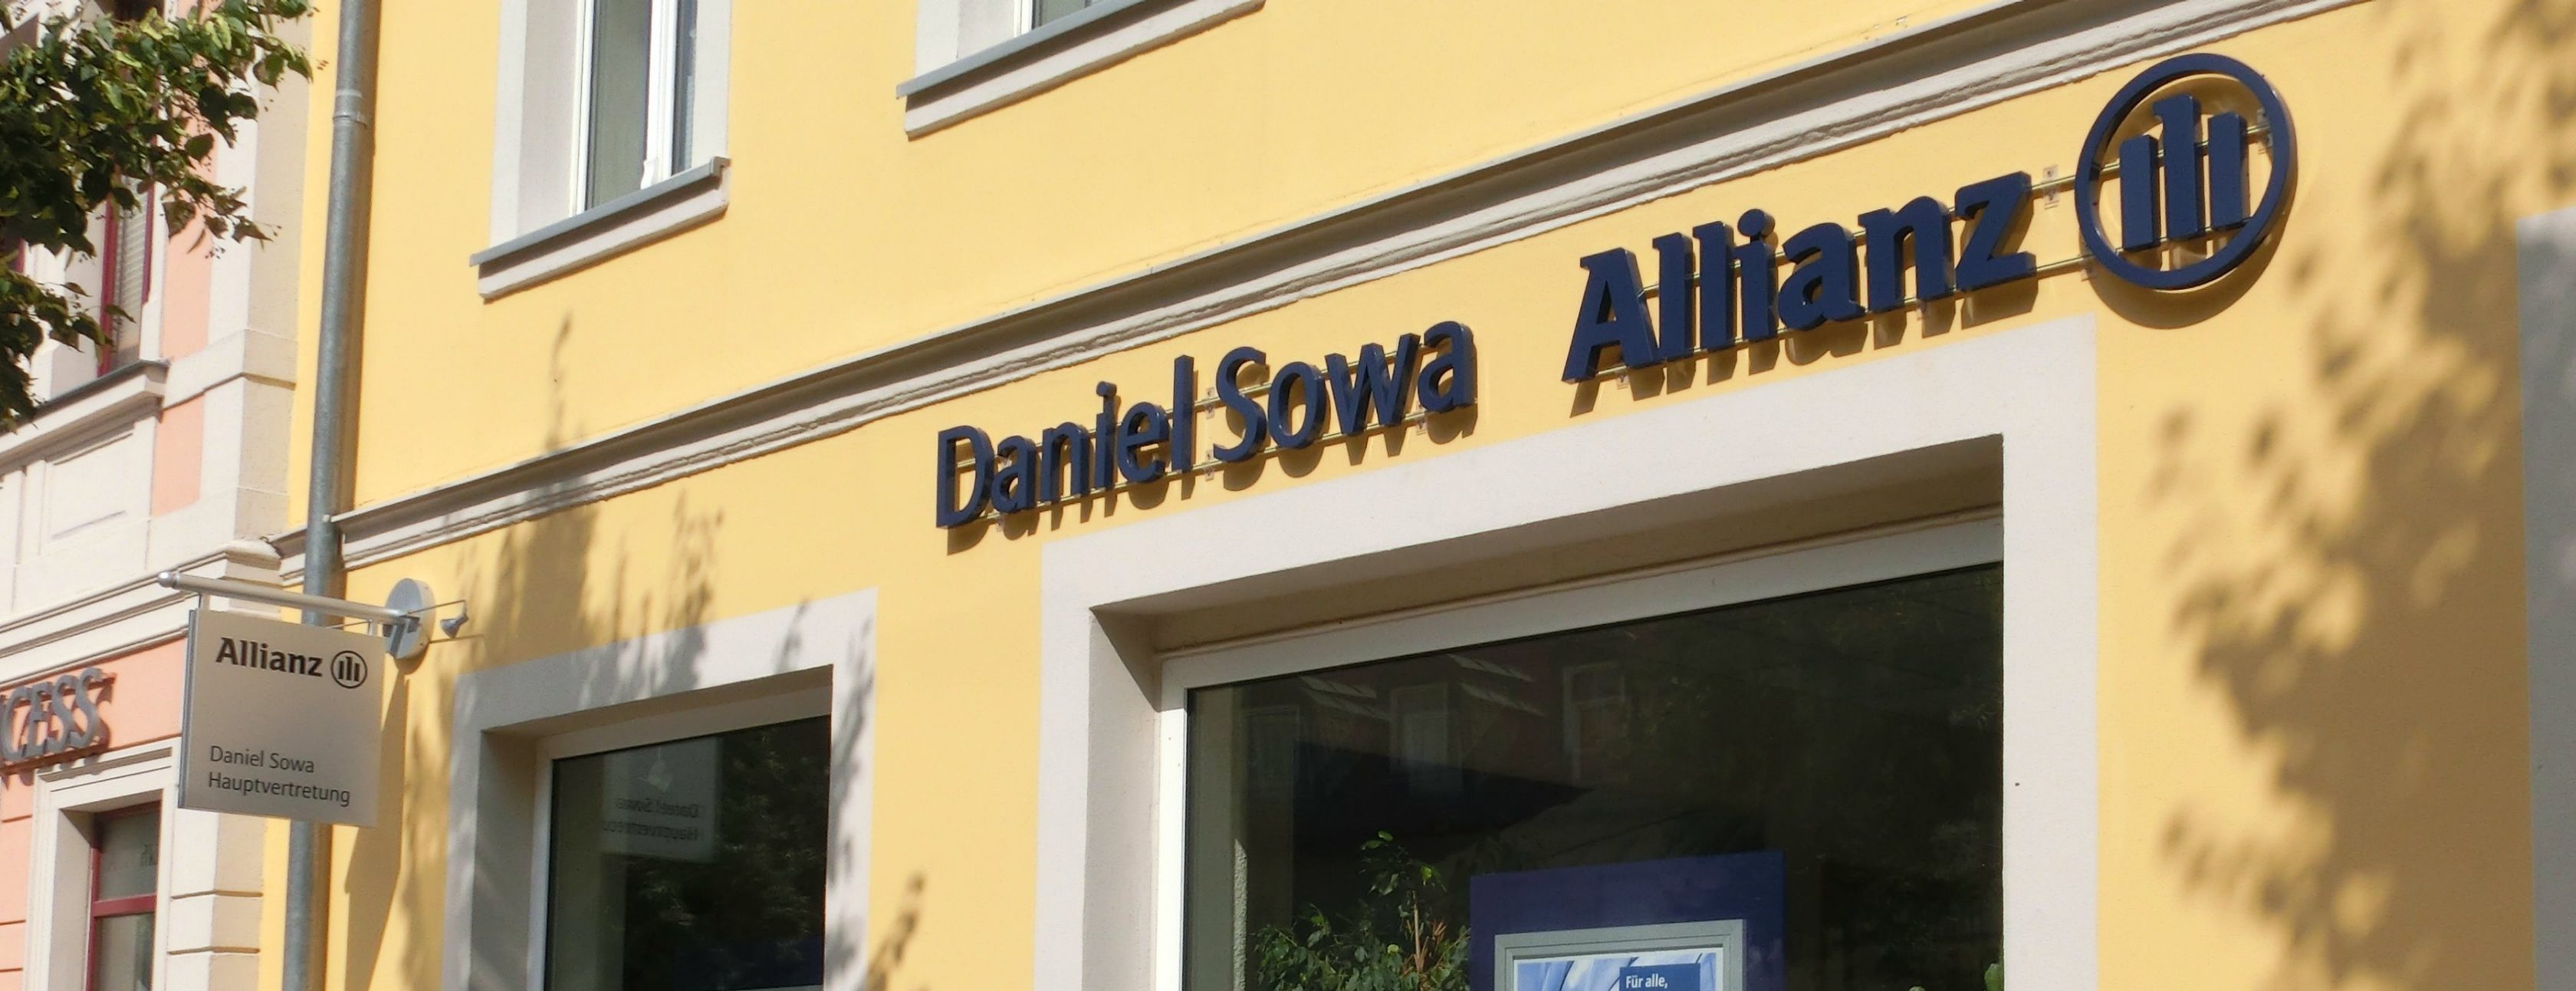 Allianz Versicherung Daniel Sowa Moritzburg - Allianz Daniel Sowa